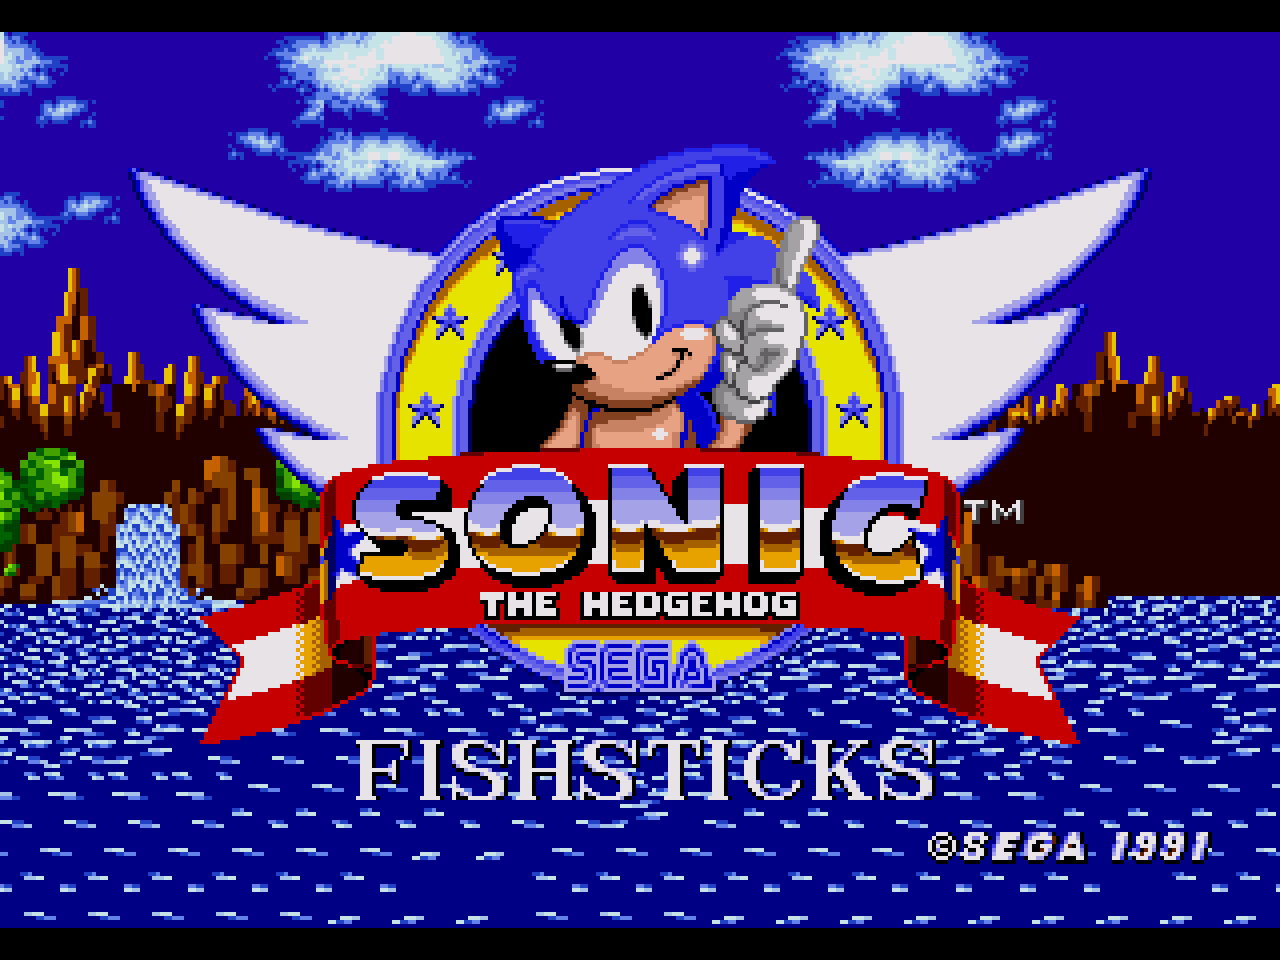 Sonic 1: Fishsticks - Jogos Online